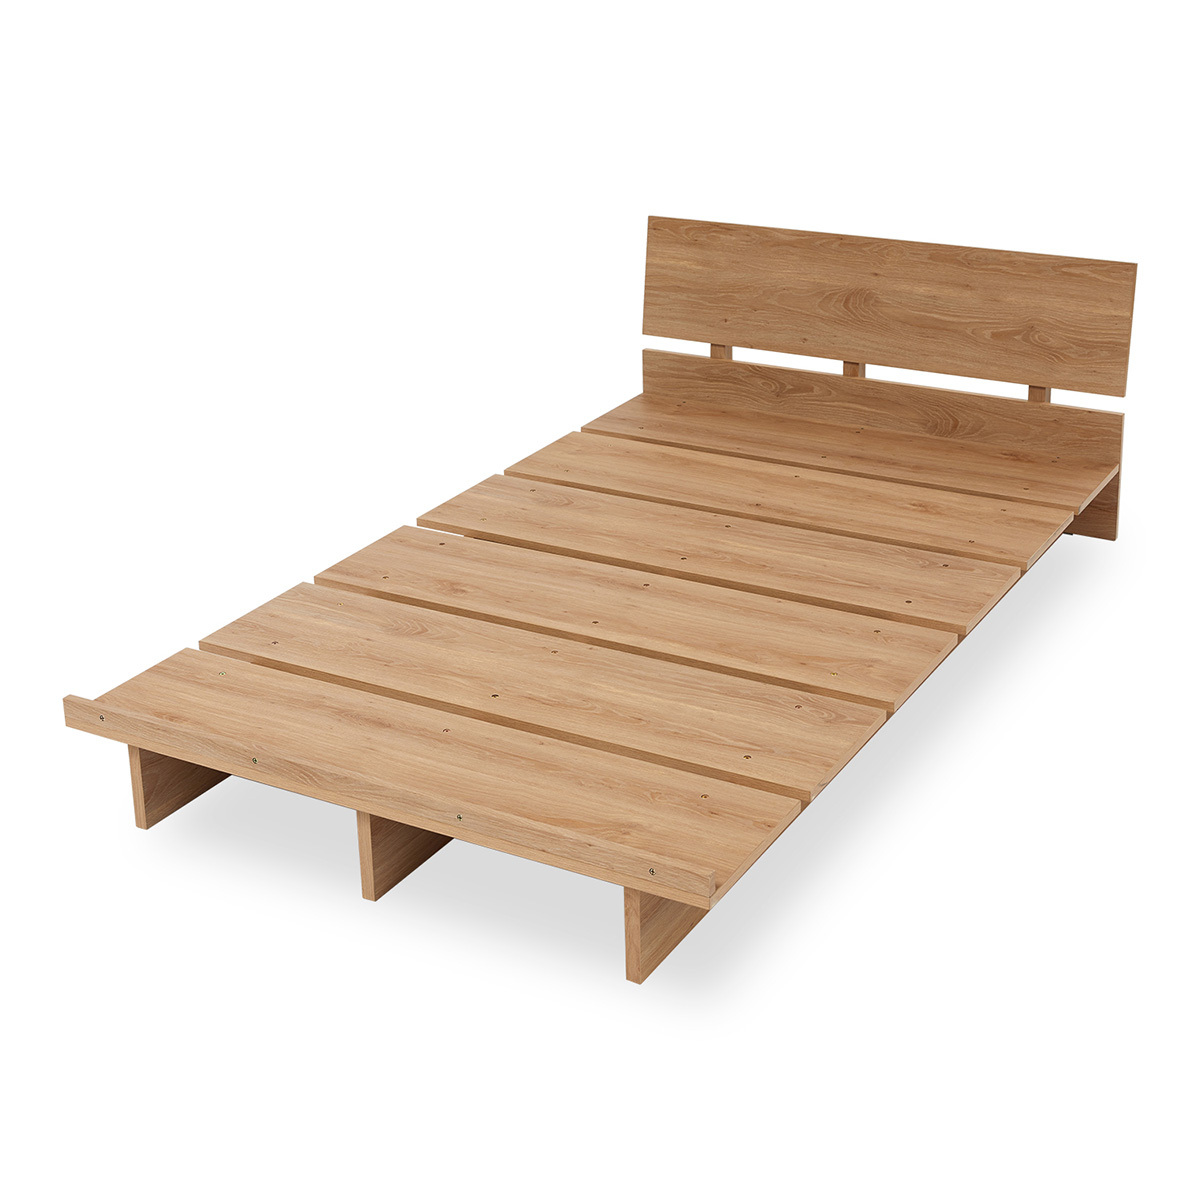 ベッド シングルベッド S フレームのみ ロータイプ ローベッド モダン シンプル 木製 北欧テイス...